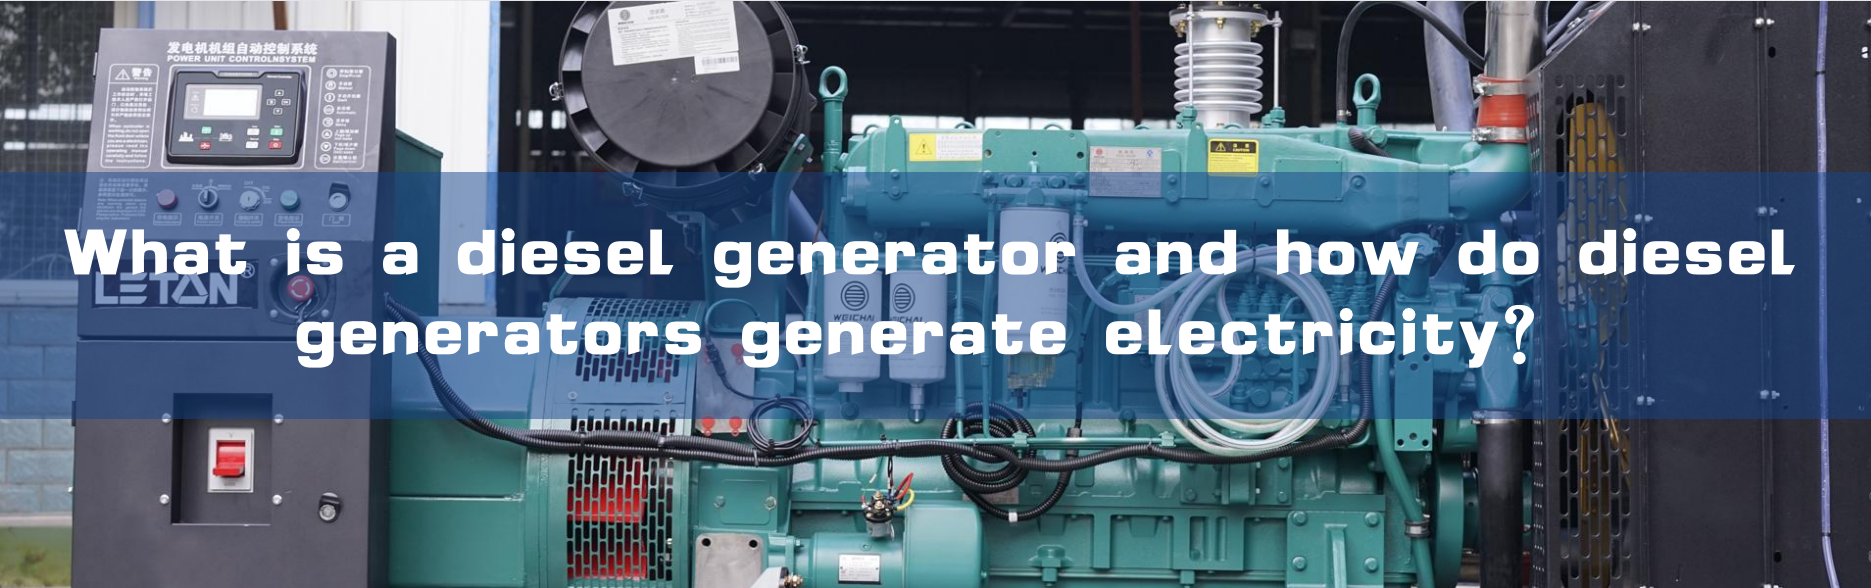 Máy phát điện diesel là gì và máy phát điện diesel tạo ra điện như thế nào?